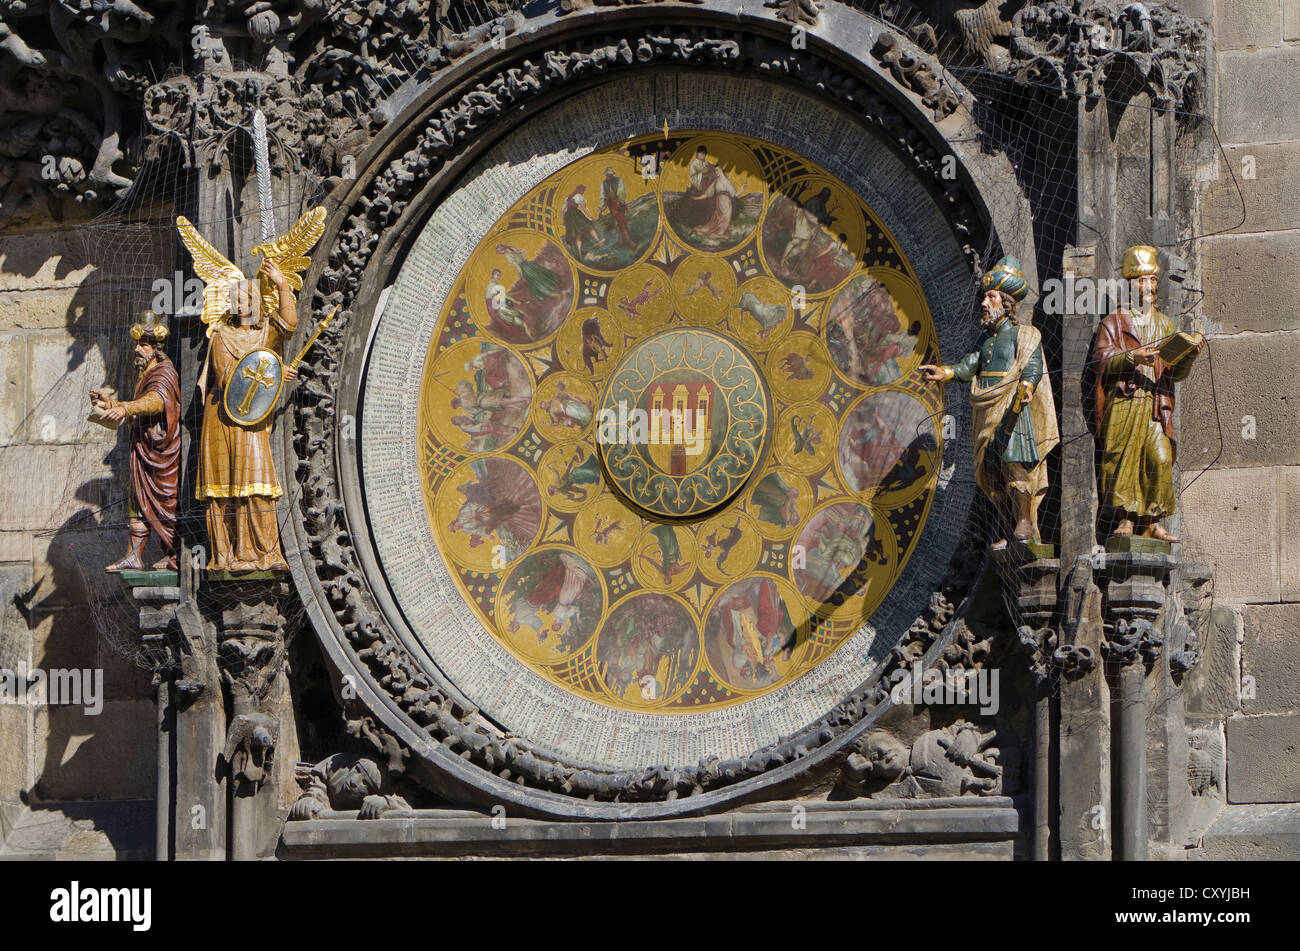 Prazsky orloj, l'horloge astronomique de Prague, l'hôtel de ville, construit en 1410 par l'horloger royal Mikulas de Kadan, Prague Banque D'Images